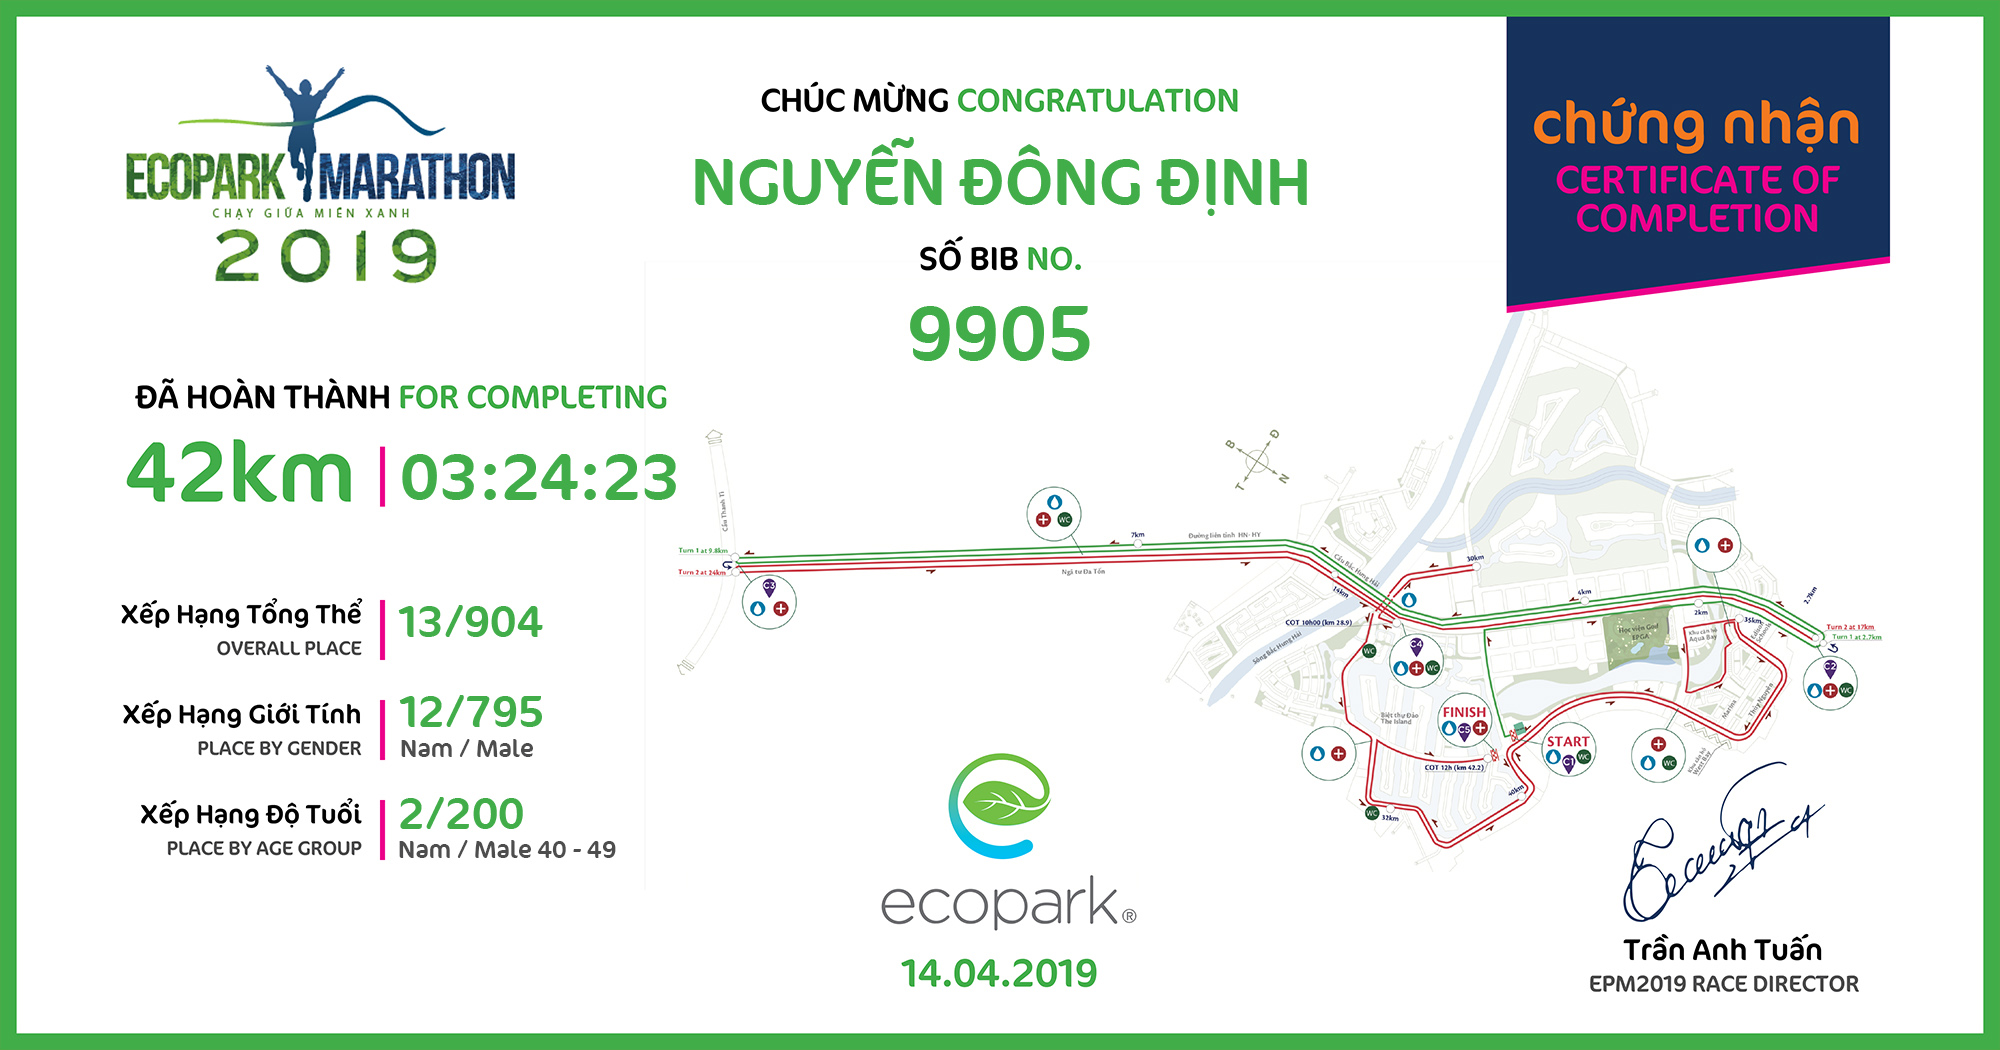 9905 - Nguyễn Đông Định